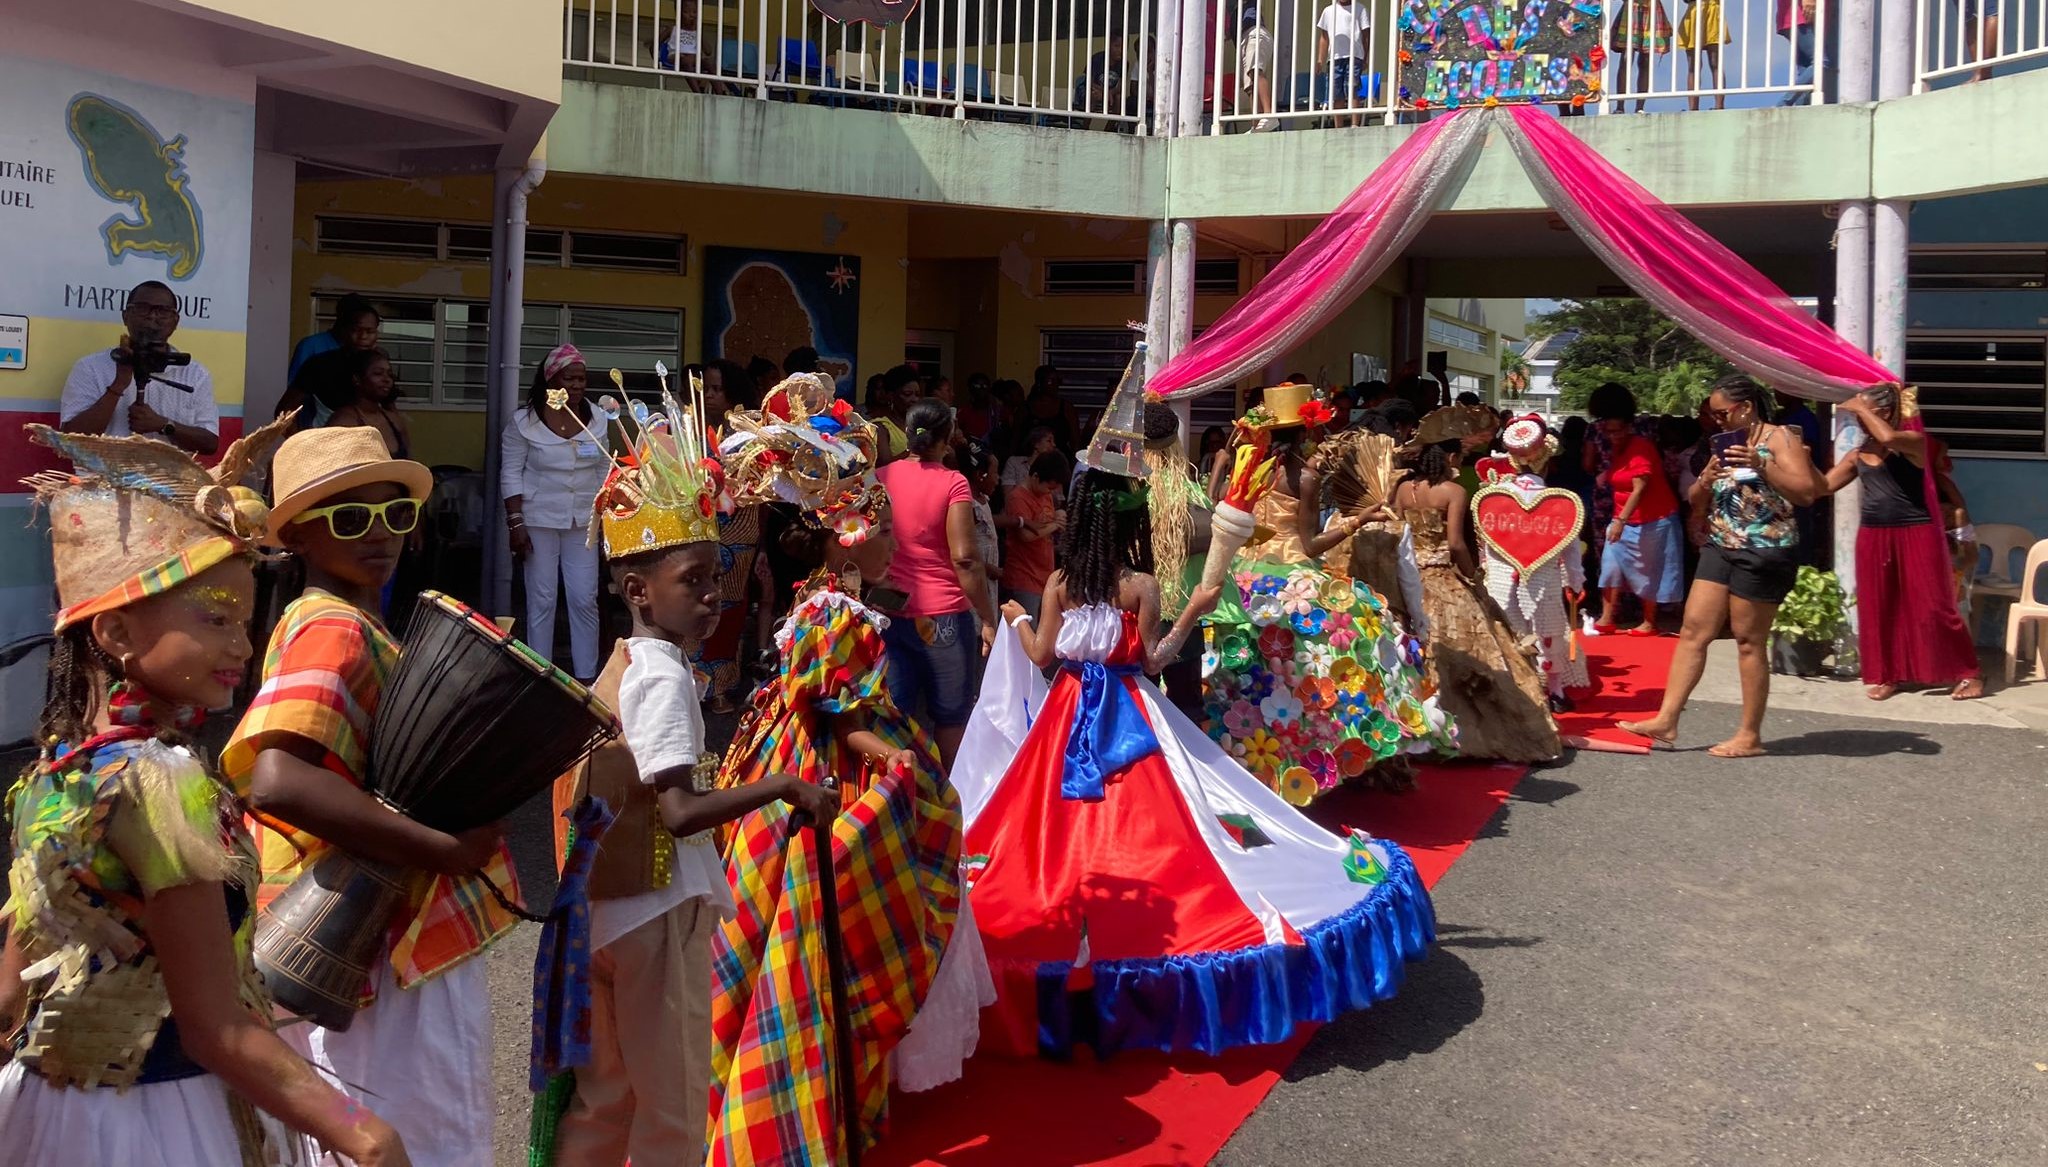     Carnaval : élection du roi, de la reine et de la mini-reine des écoles au François

